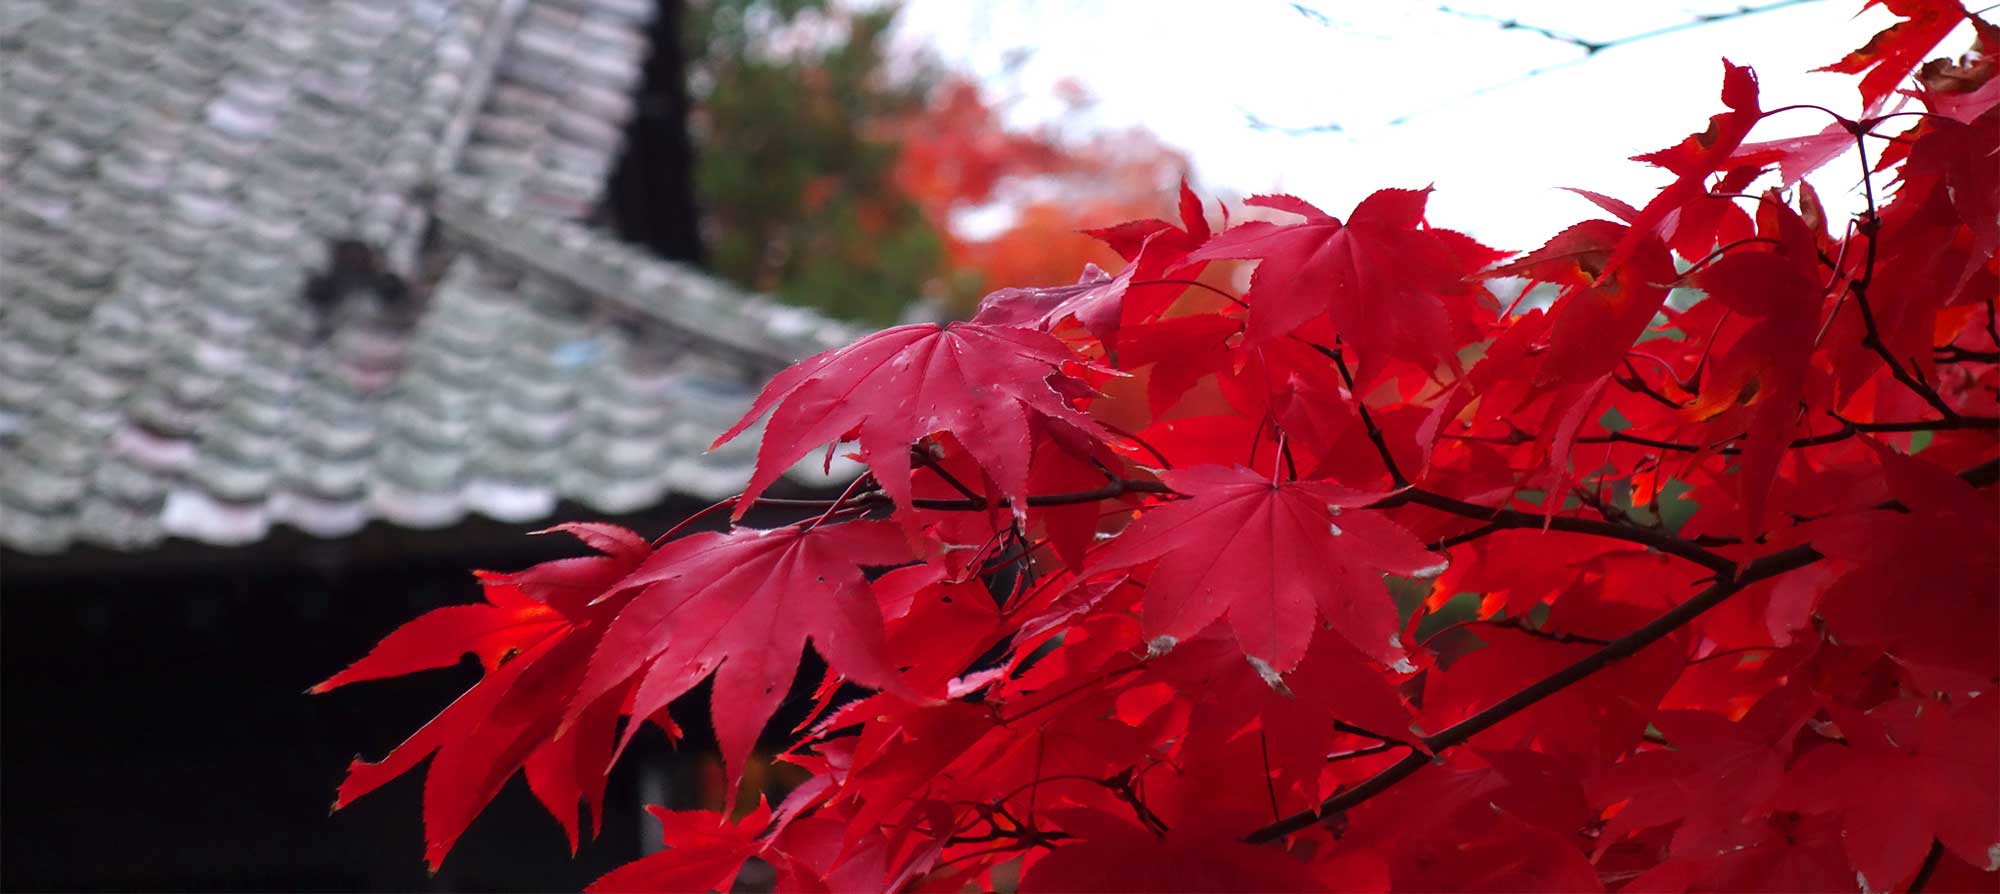 Осенние алые листья клена и на фоне черепичной крыши буддийского храма